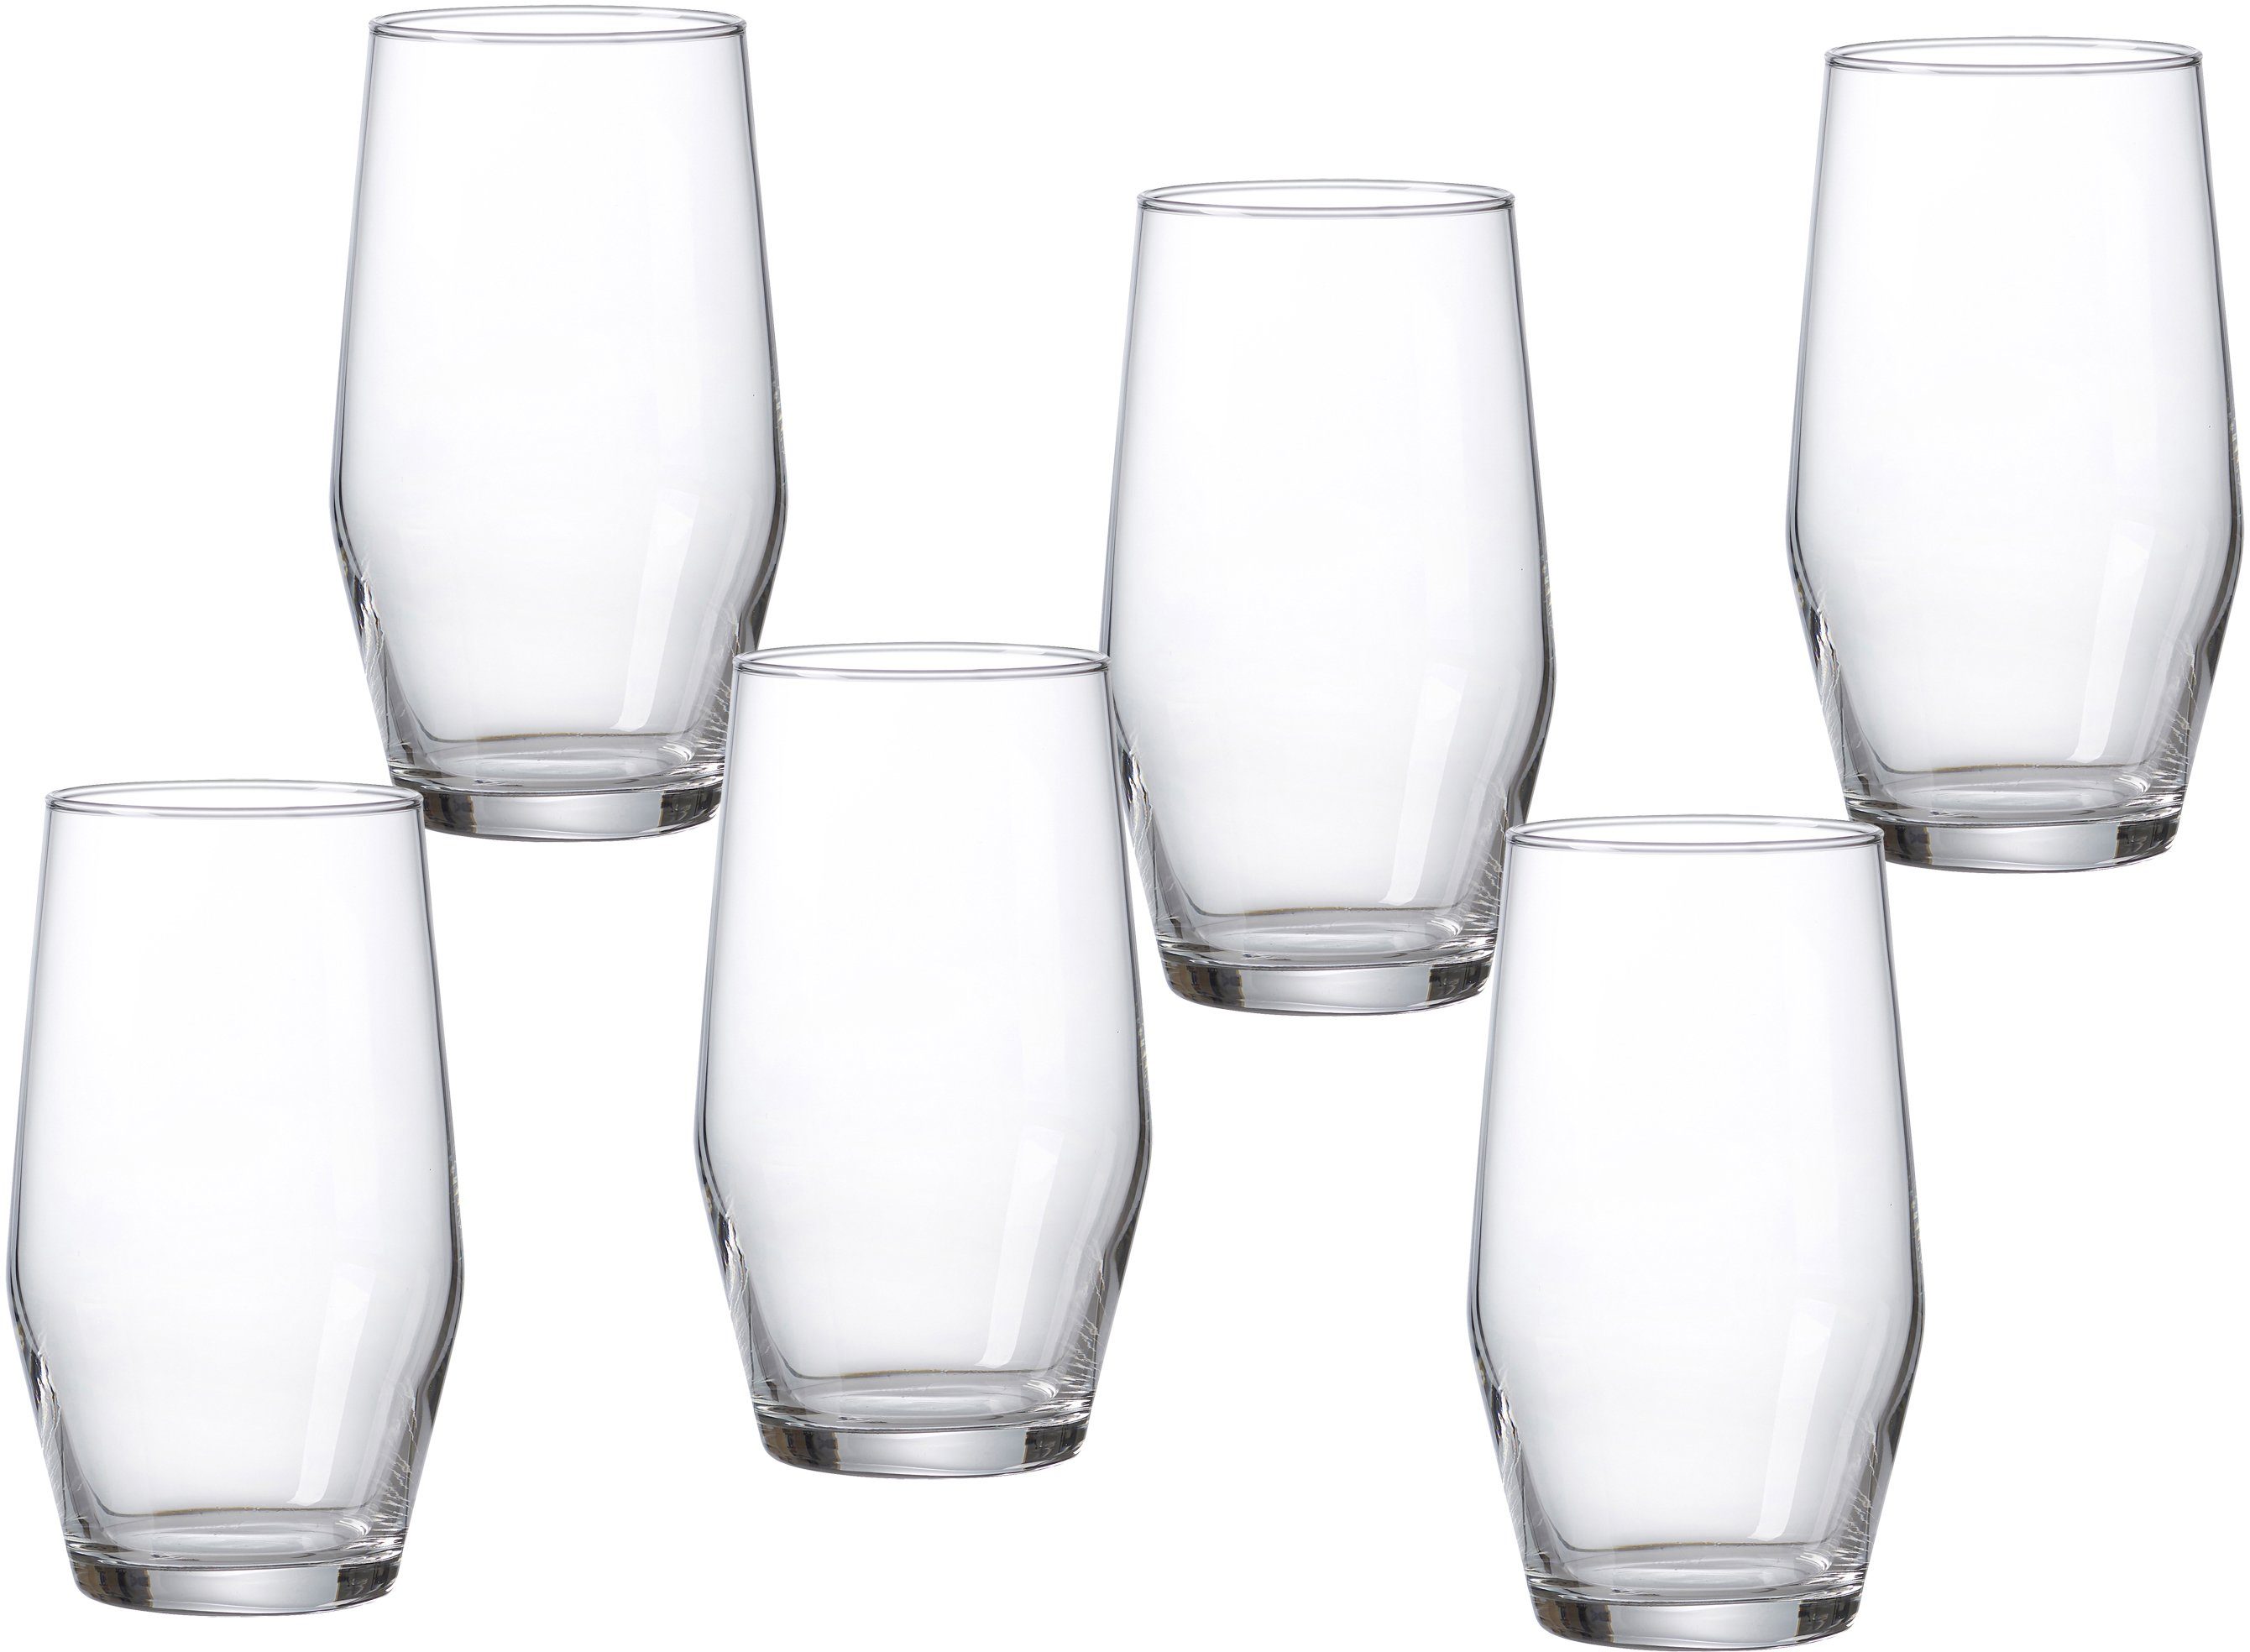 Ritzenhoff & Breker Longdrinkglas »Salsa«, Glas, robust und kristallklar,  6-teilig online kaufen | OTTO